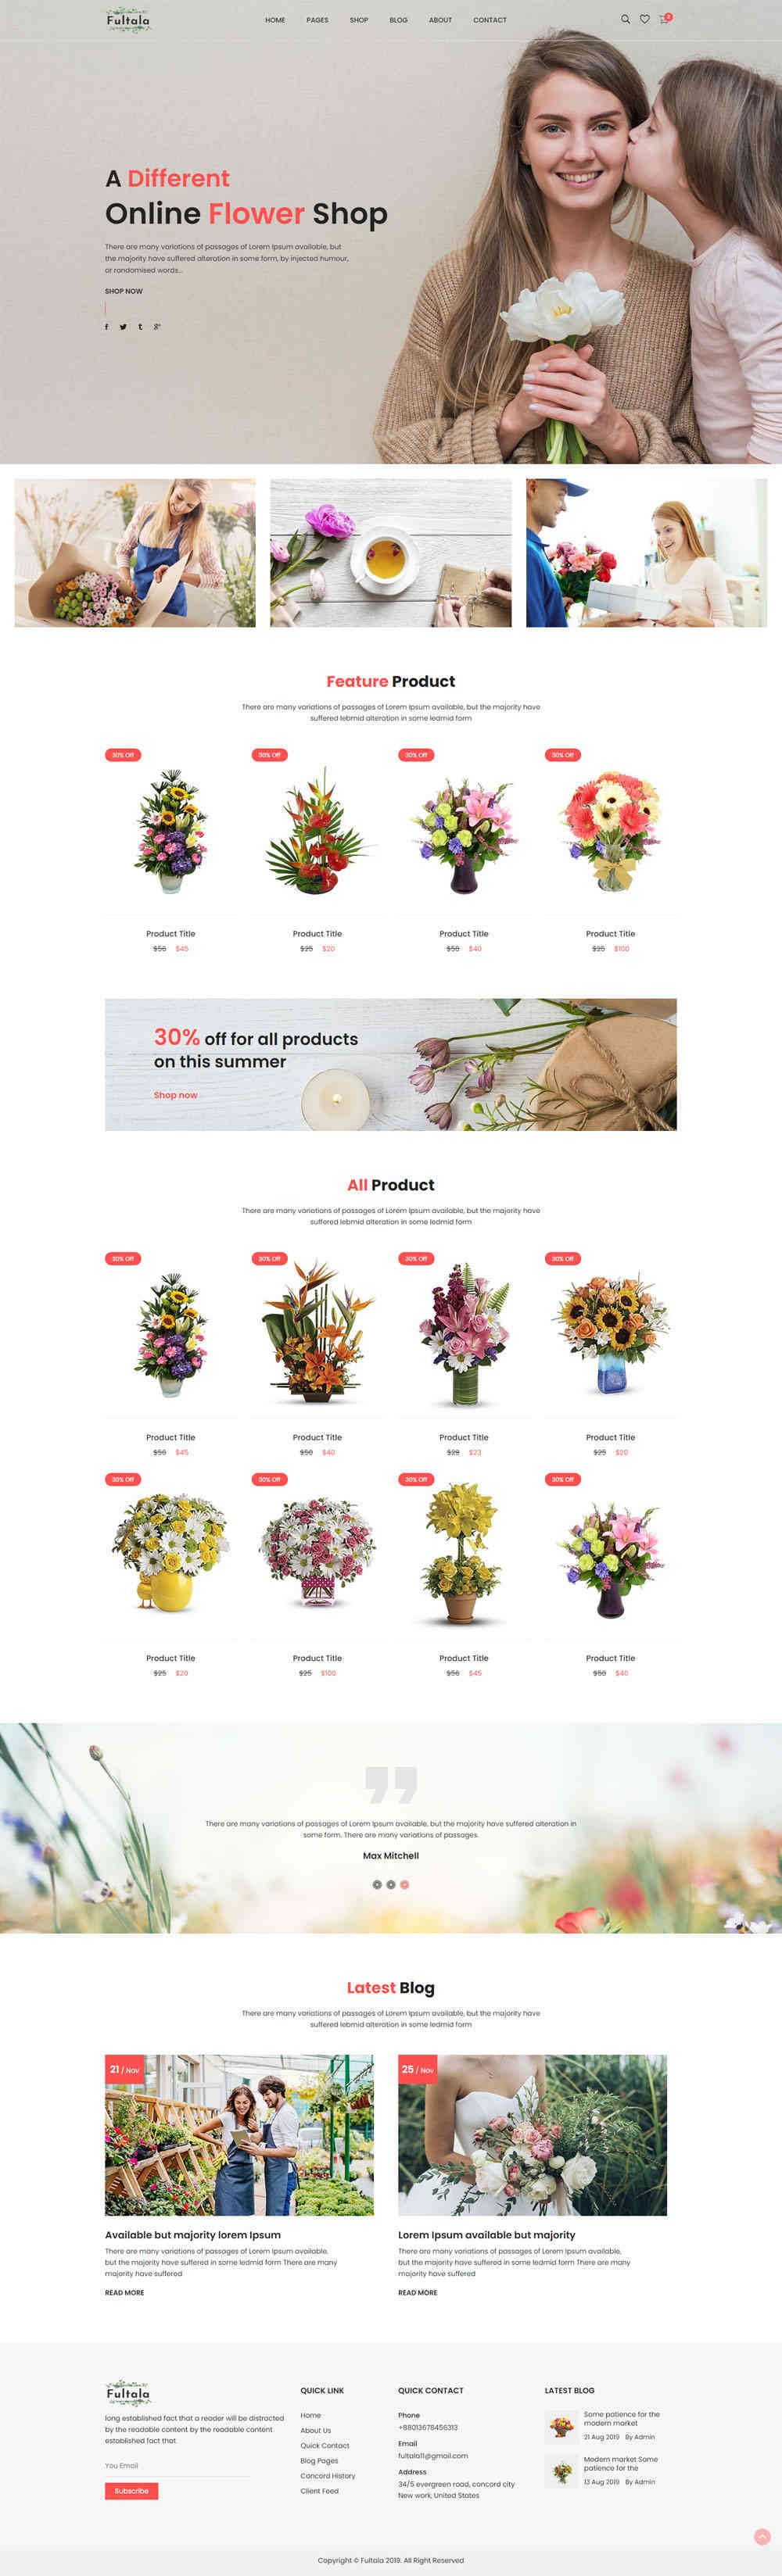 thiet ke website tmi flowershop 10025